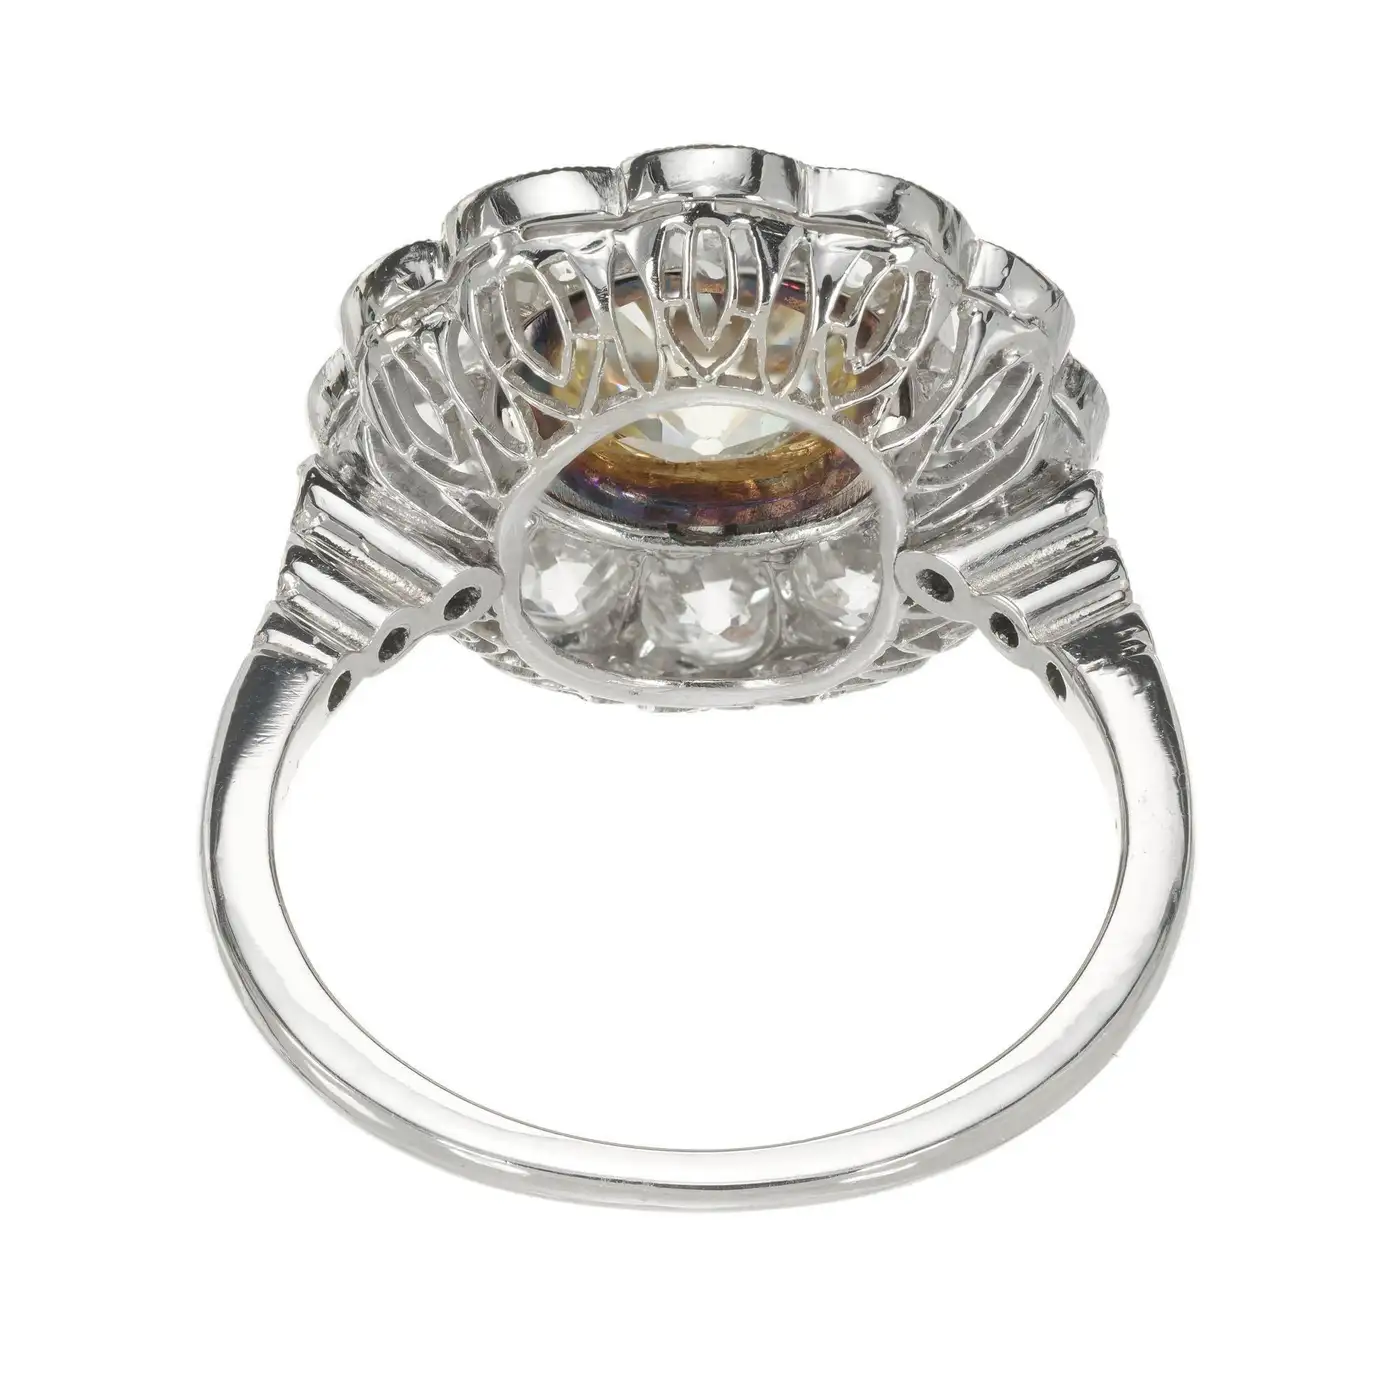 1.39-Carat-Natural-Yellow-White-Diamond-Platinum-Engagement-Ring-GIA-Certified-3.webp